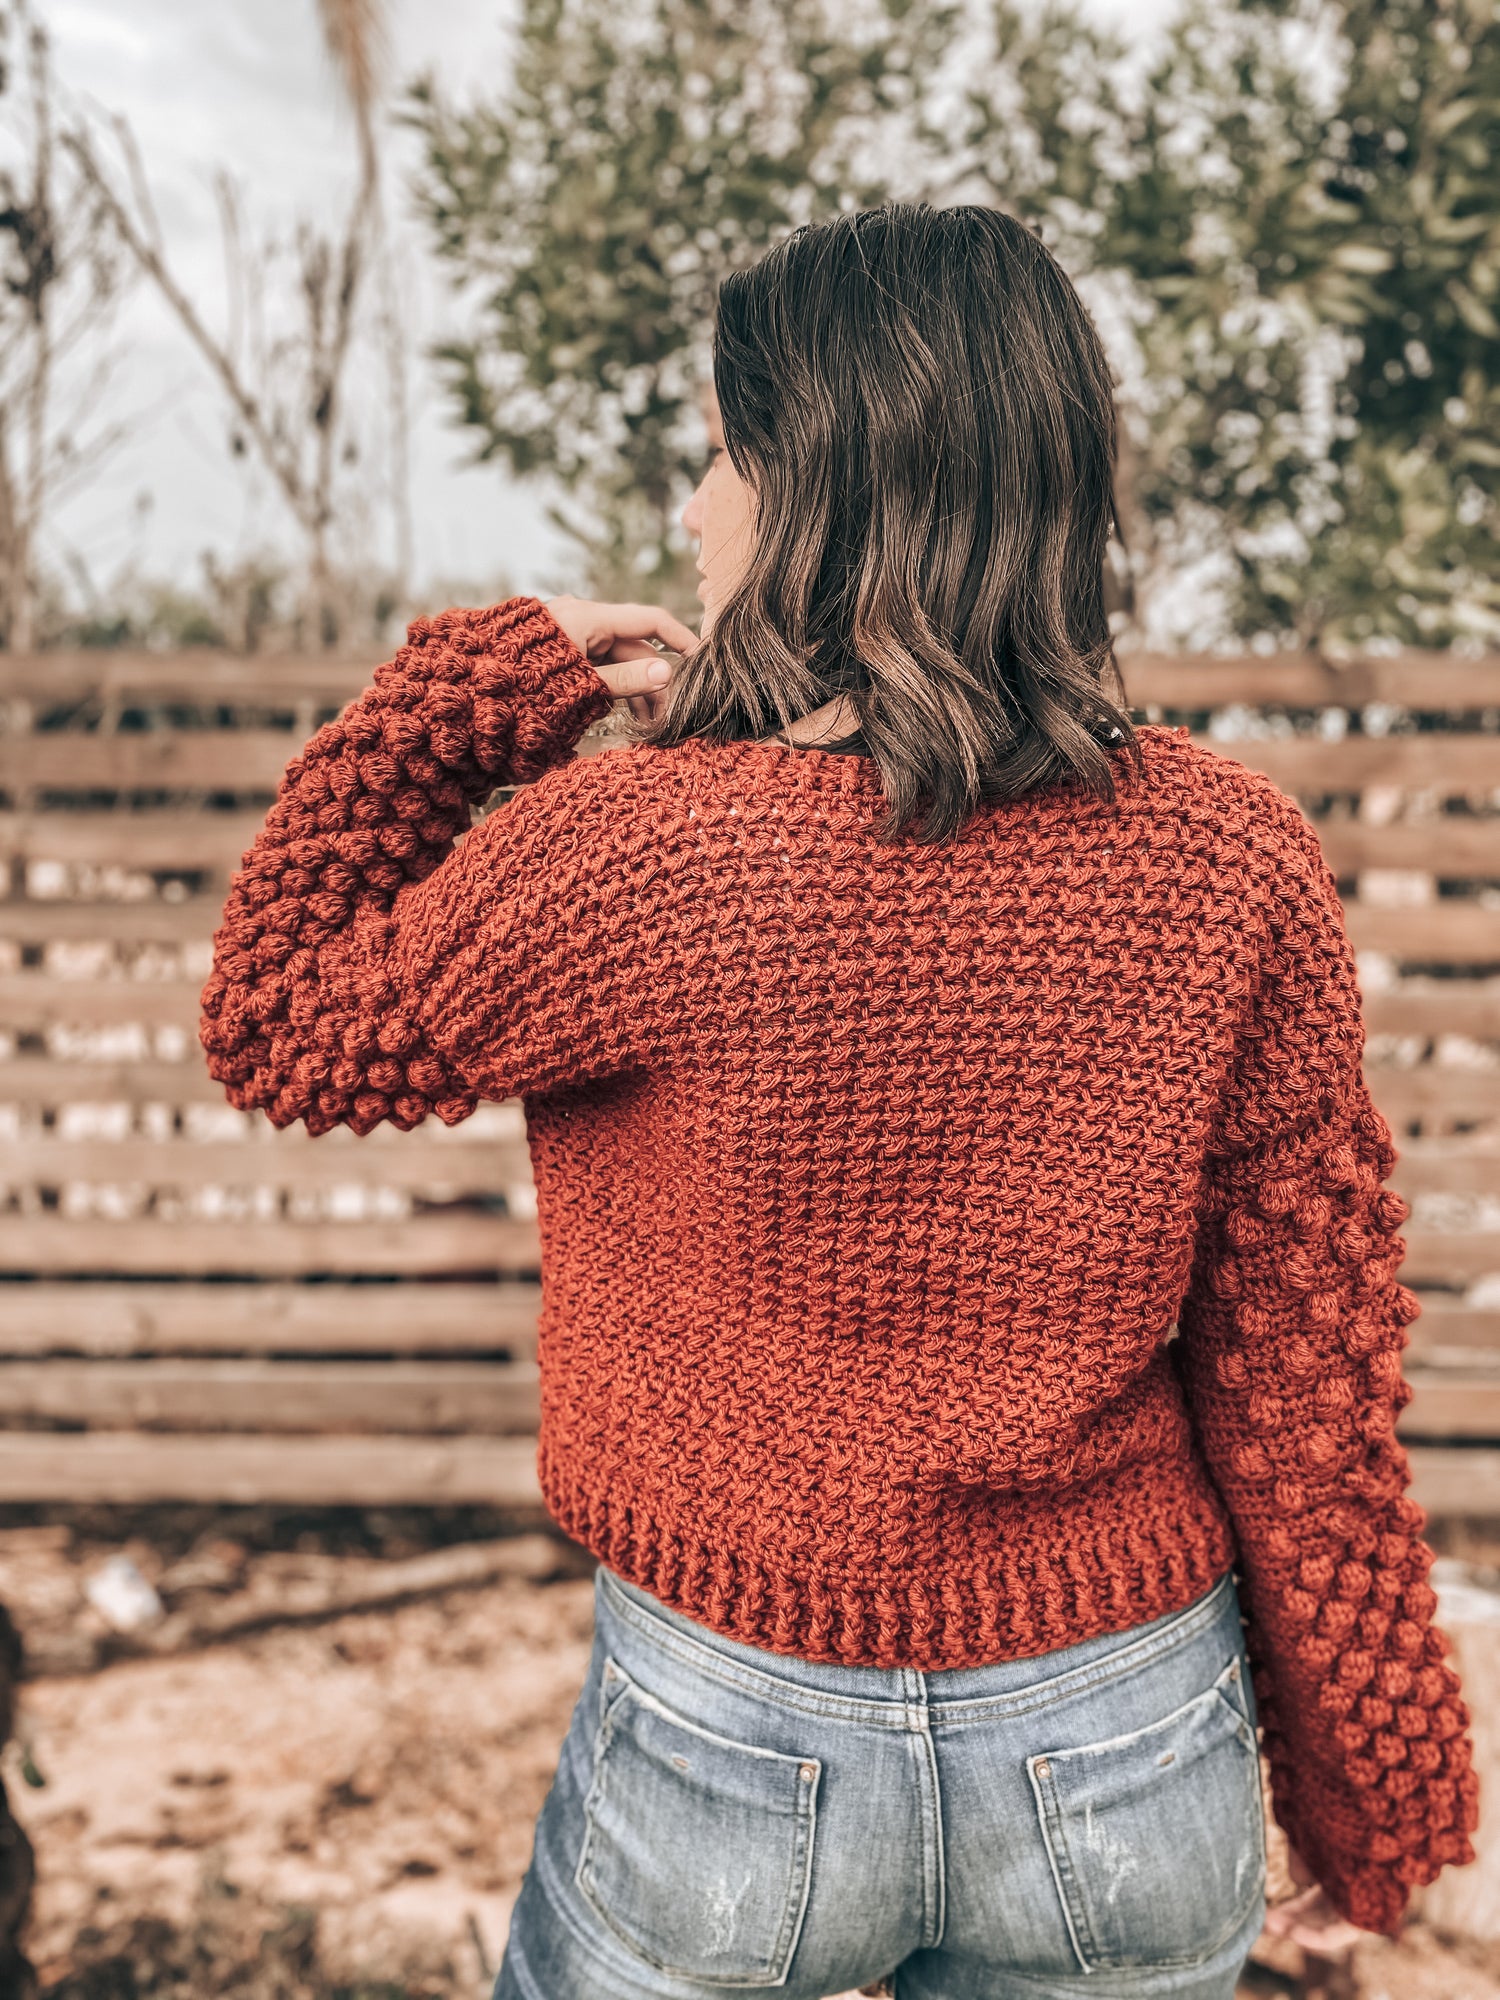 Cinnamon Jacket-Crochet pattern by Zein Crochet Designs